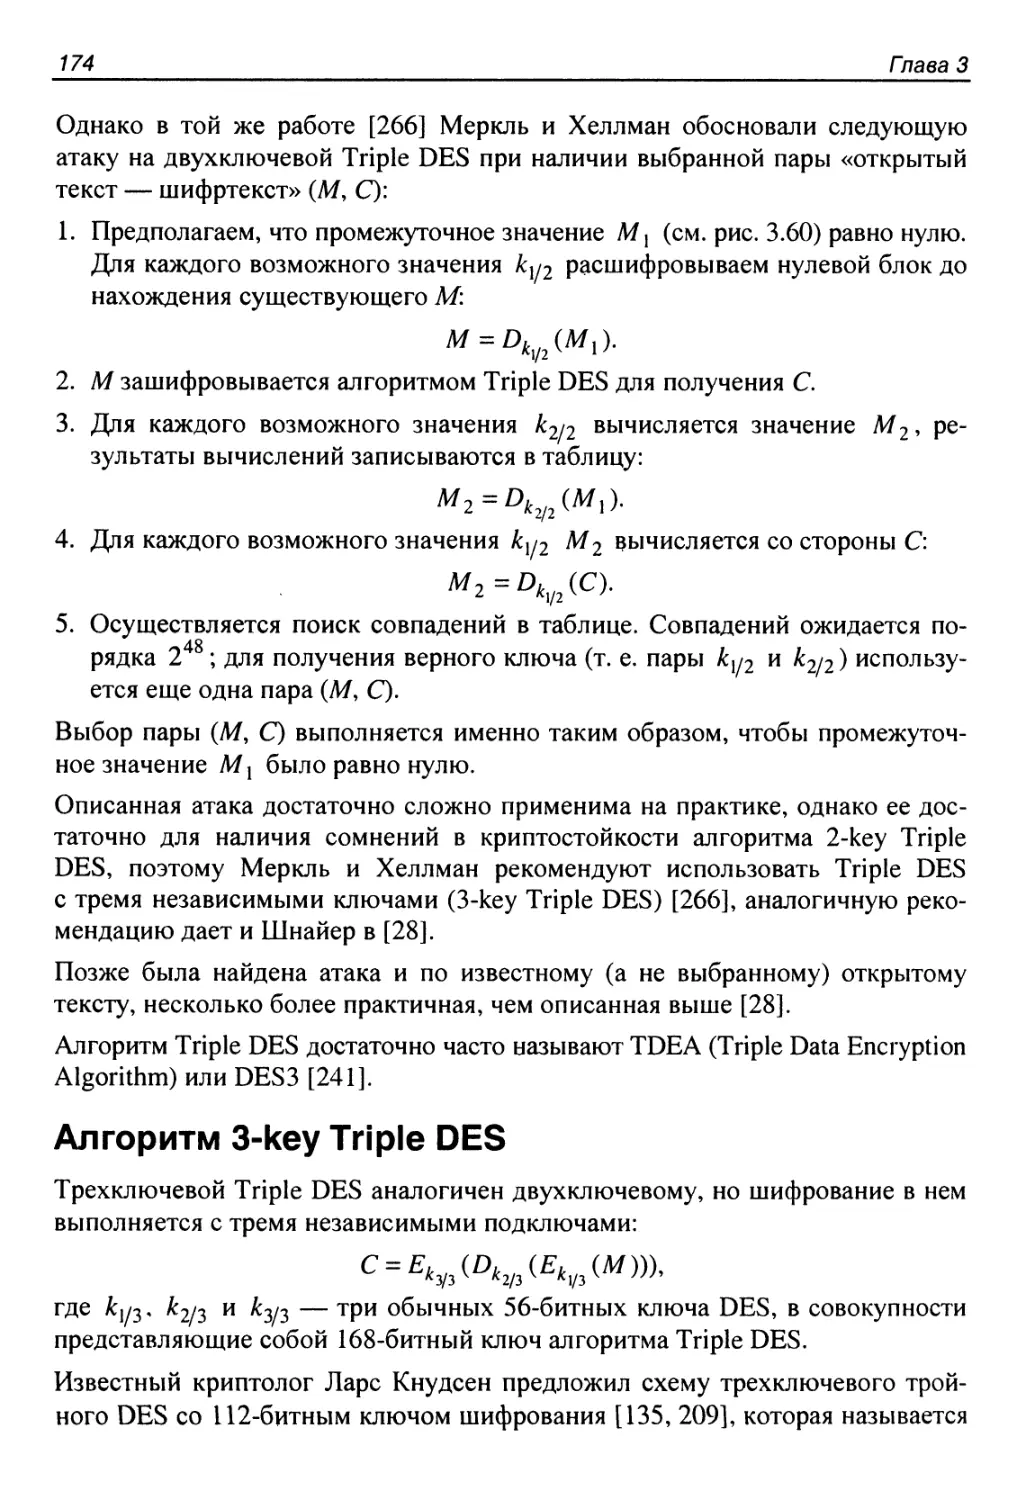 Алгоритм 3-key Triple DES